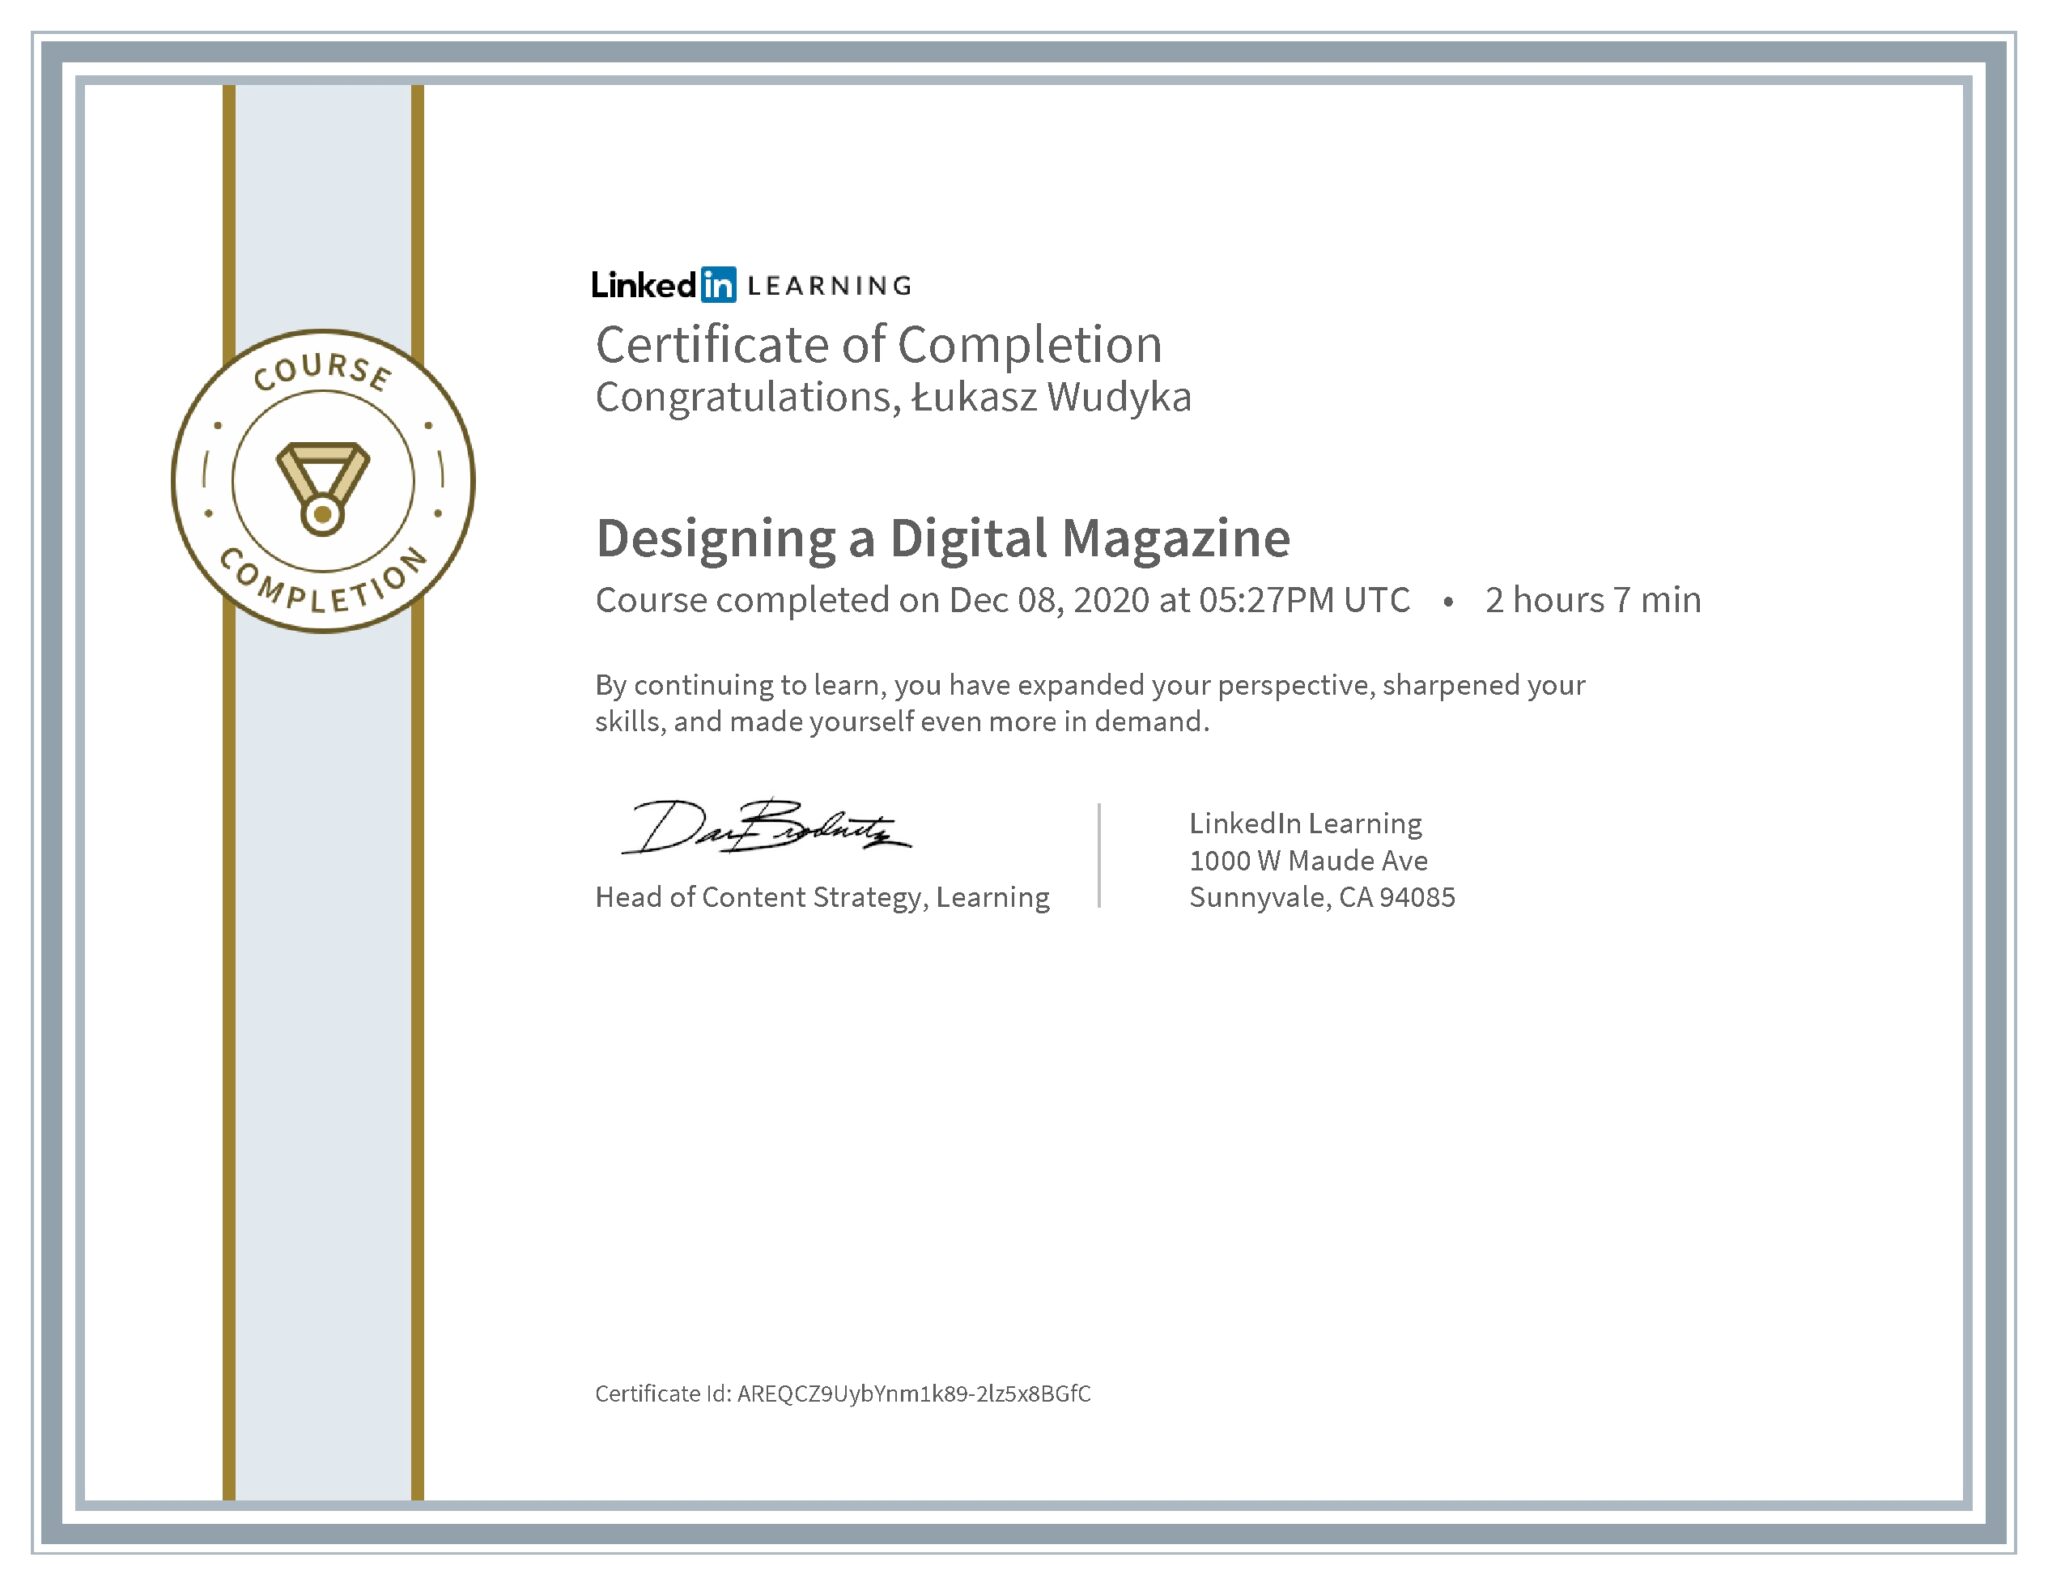 Łukasz Wudyka certyfikat LinkedIn Designing a Digital Magazine